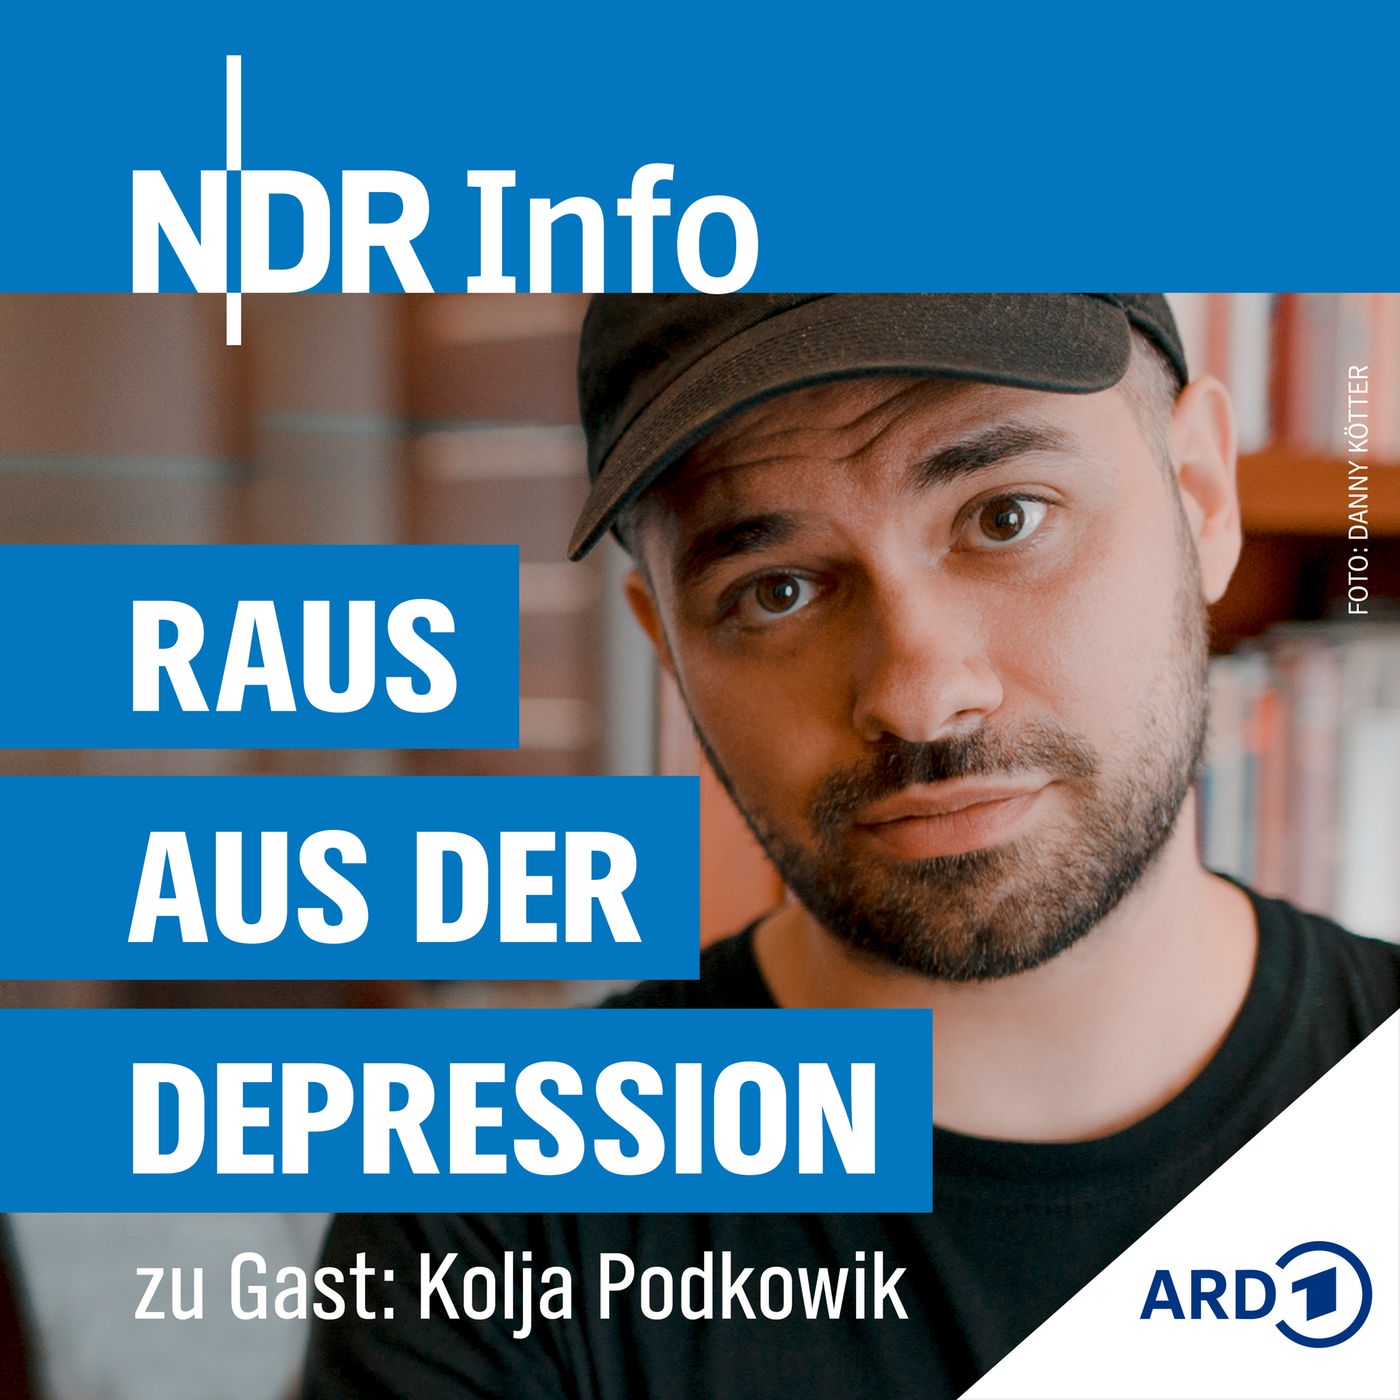 Kolja Podkowik: Depressiv durch Kiffen?